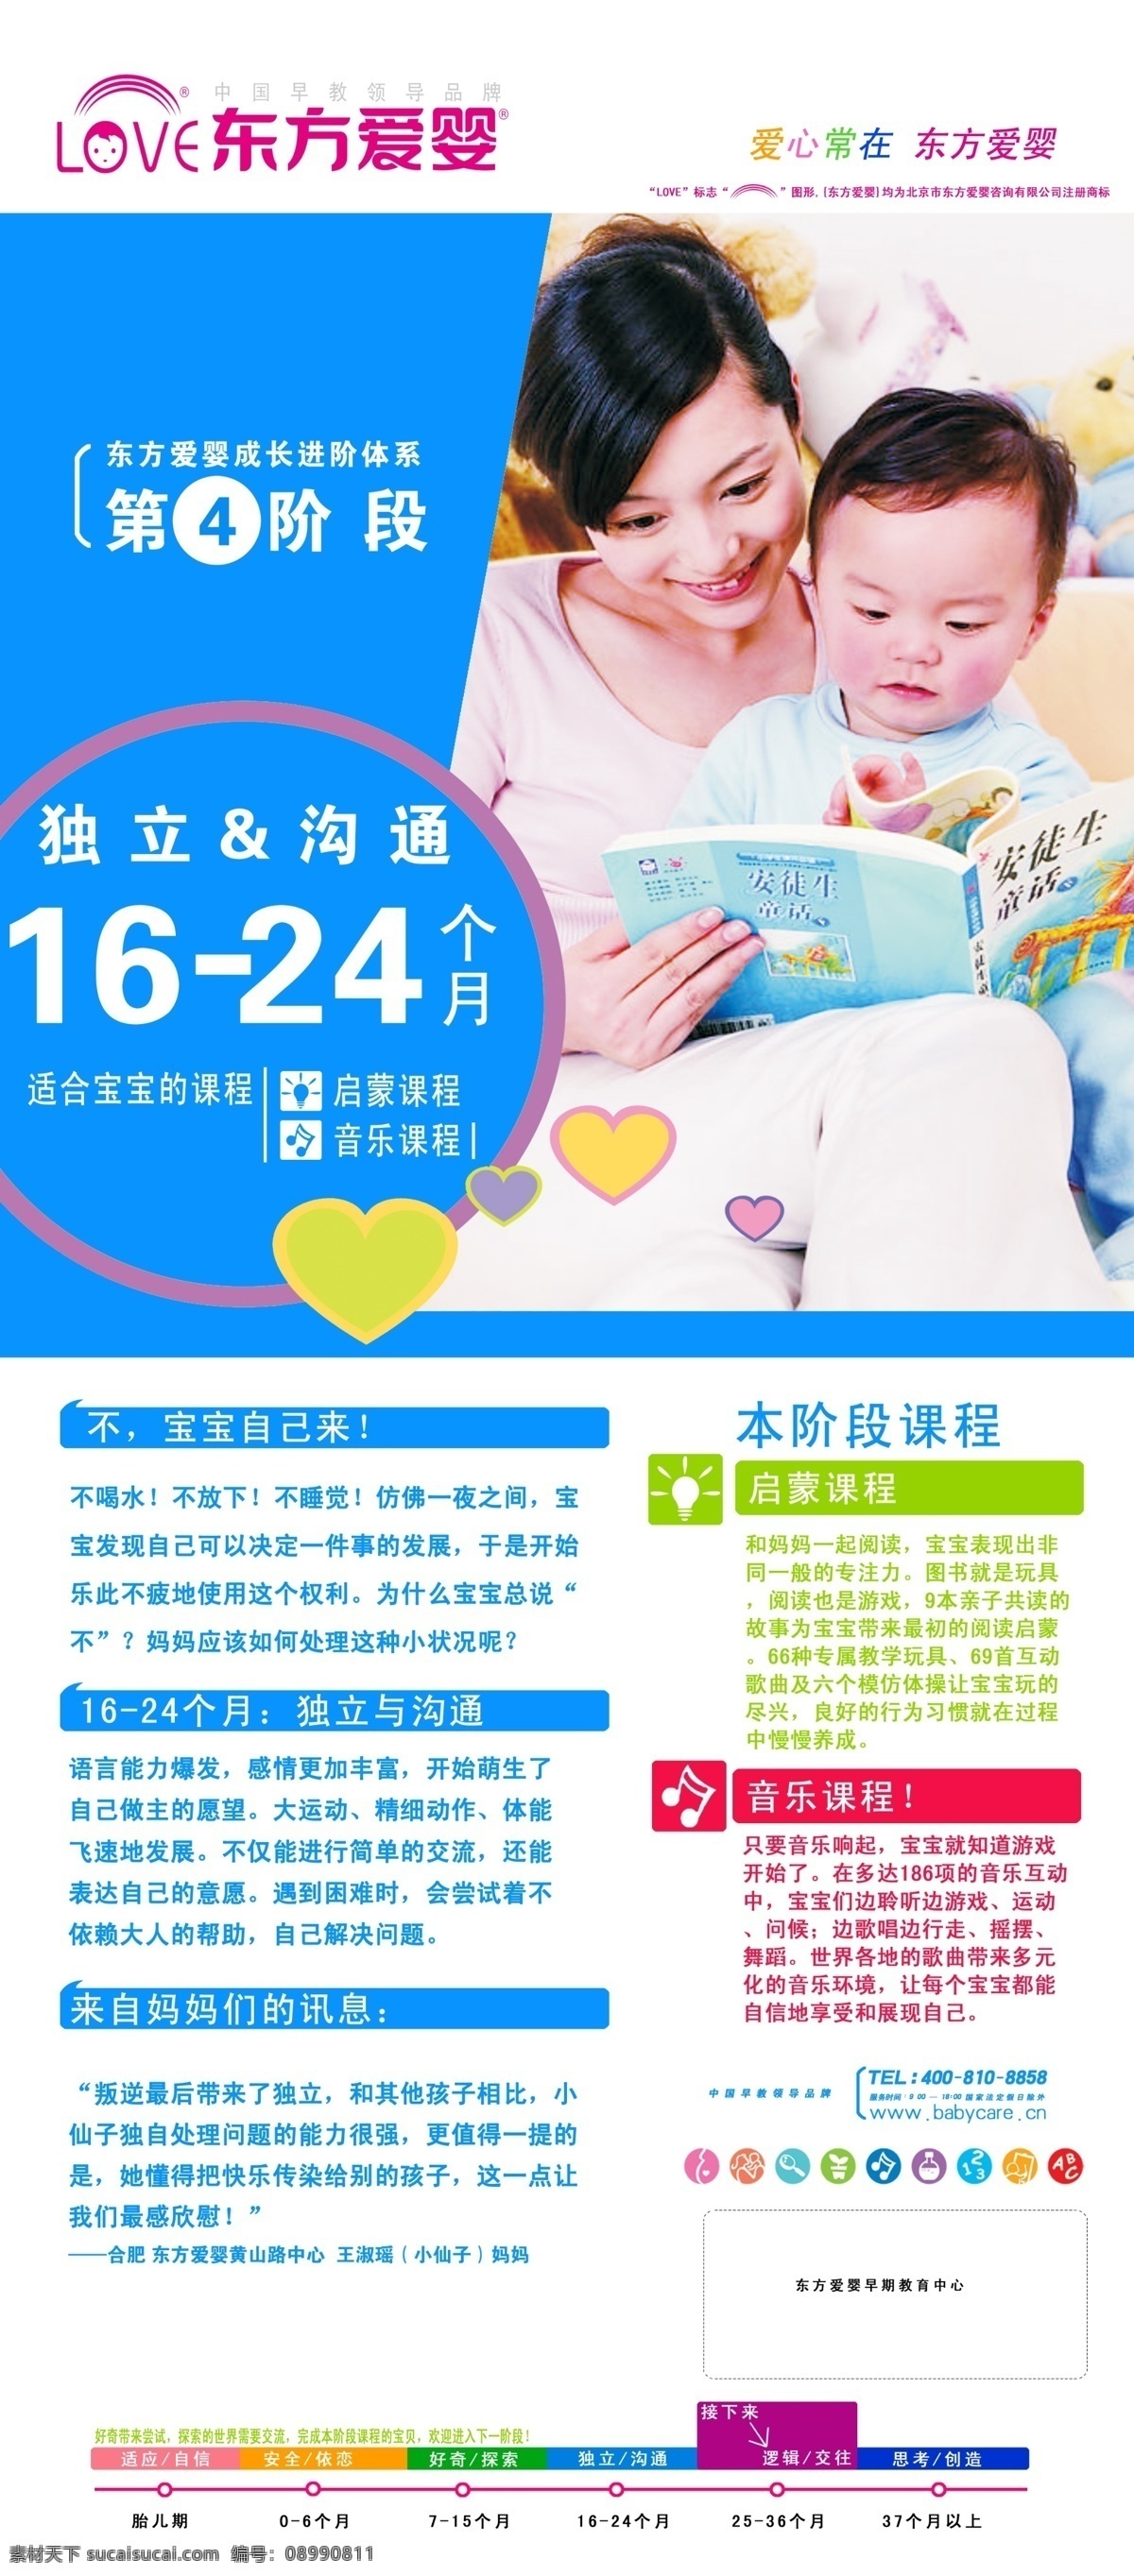 东方爱婴展架 第六阶段 37个月 宝宝展架 东方爱婴教育 展板模板 广告设计模板 源文件